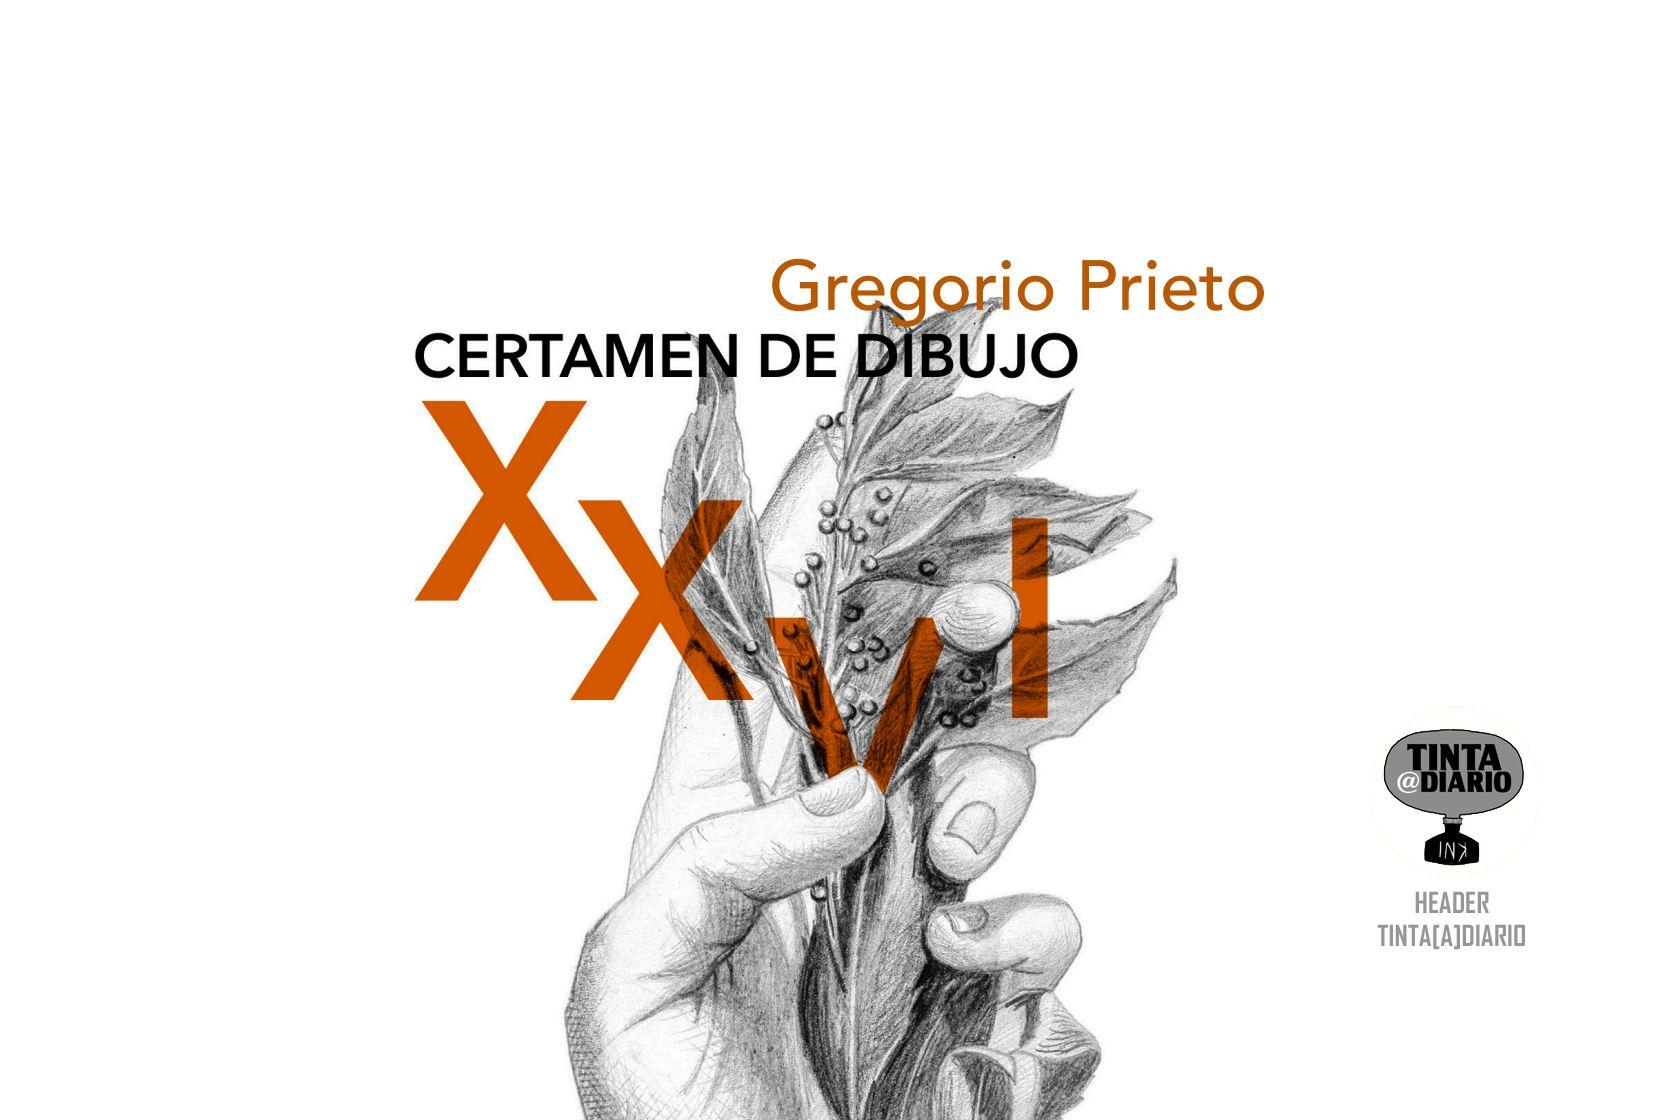 XXVI CERTAMEN DE DIBUJO GREGORIO PRIETO